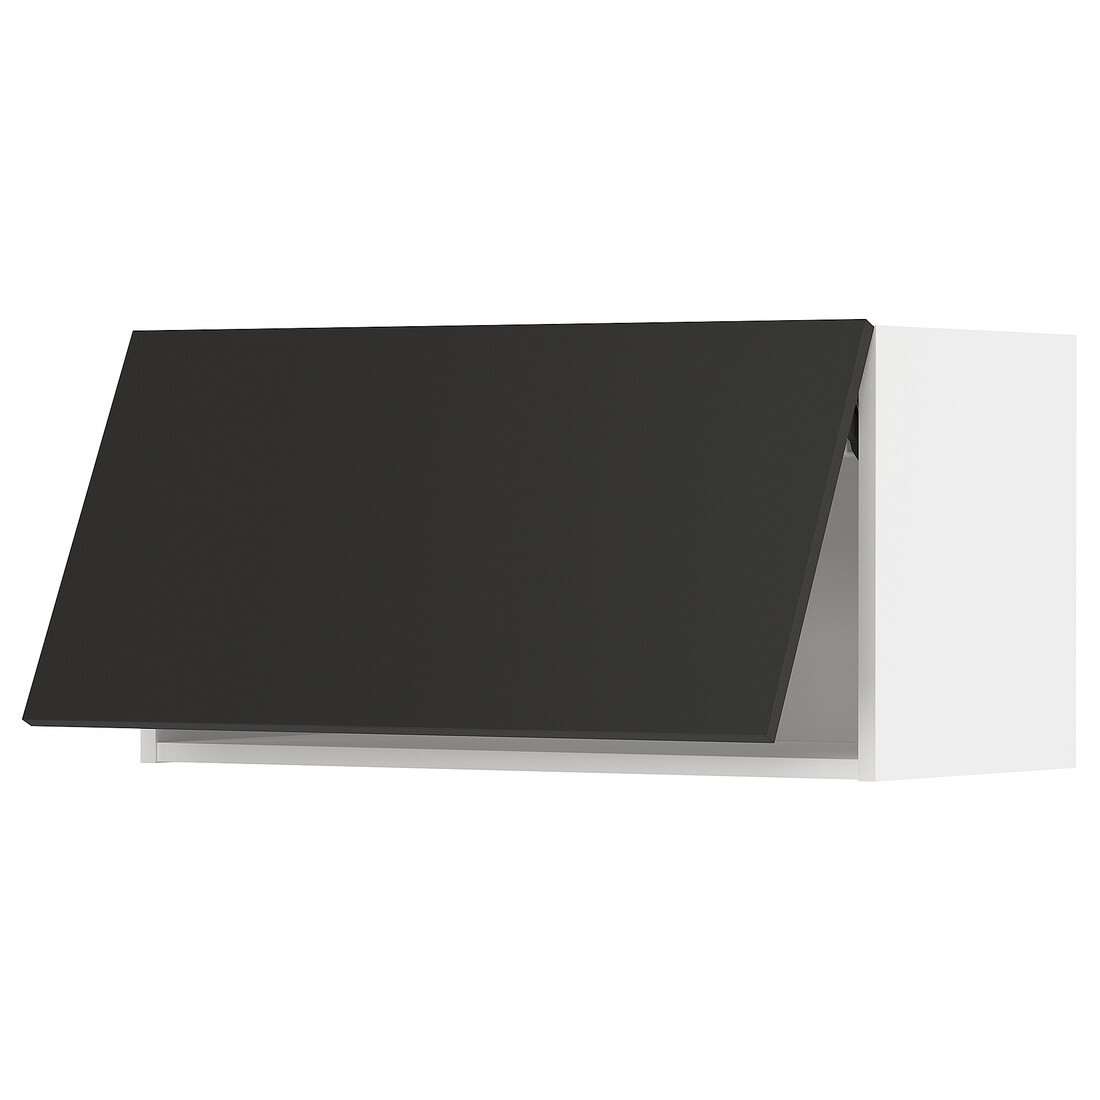 METOD МЕТОД Навесной горизонтальный шкаф, белый / Nickebo матовый антрацит, 80x40 см